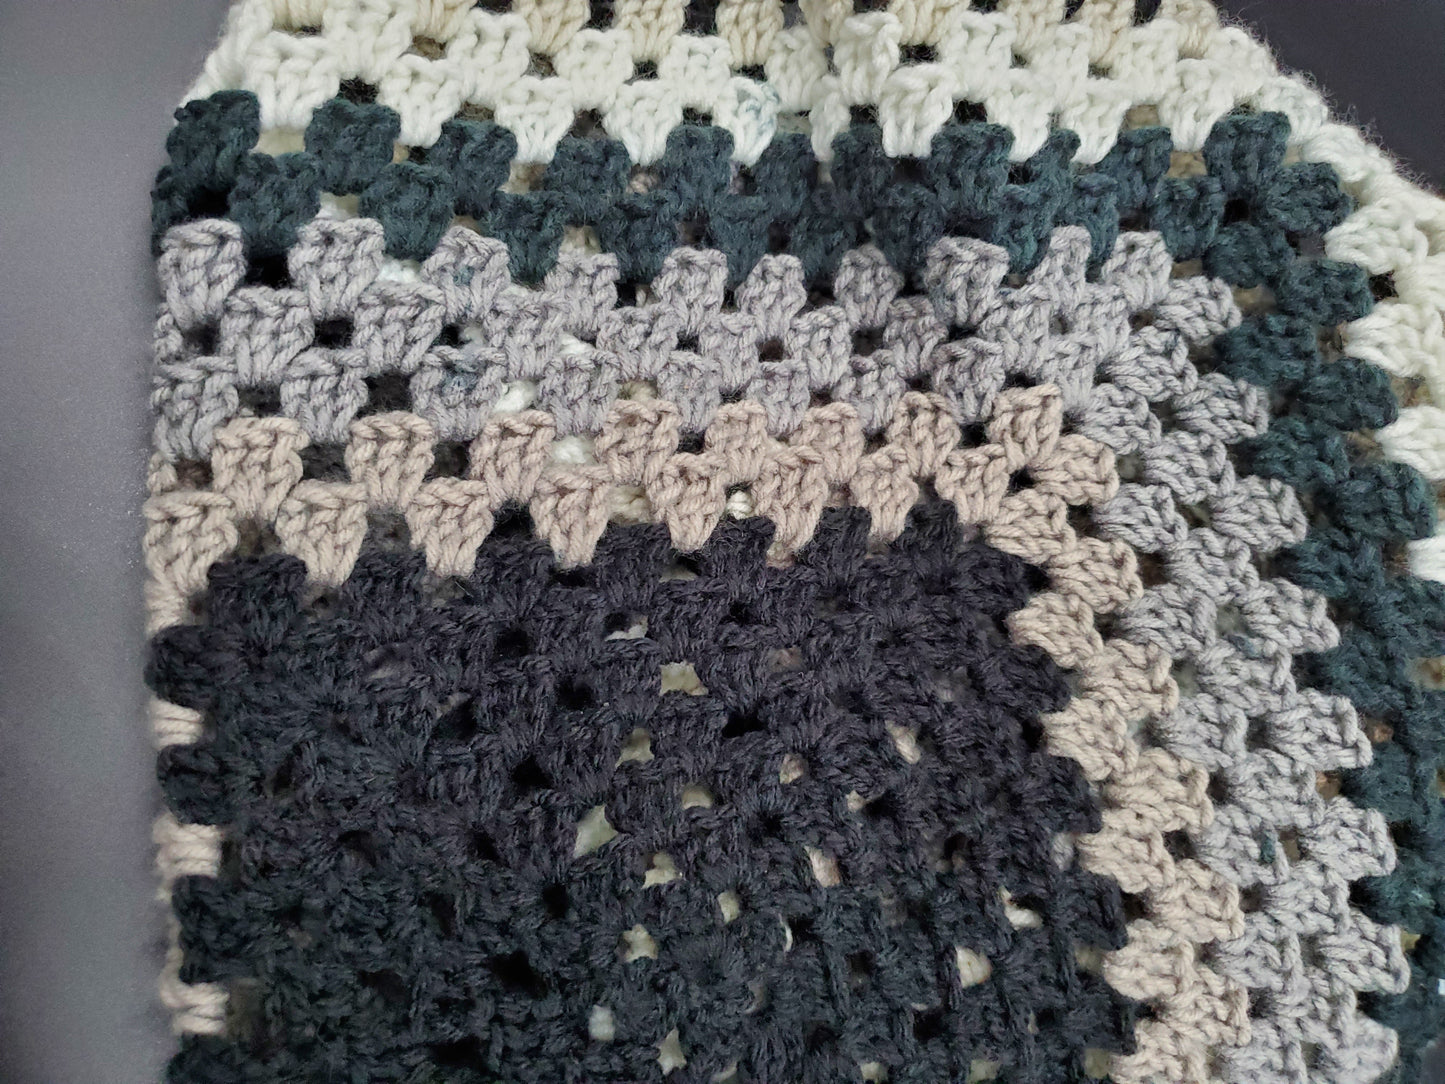 Market Bag / Crocheted Bag / Black, Grey, White